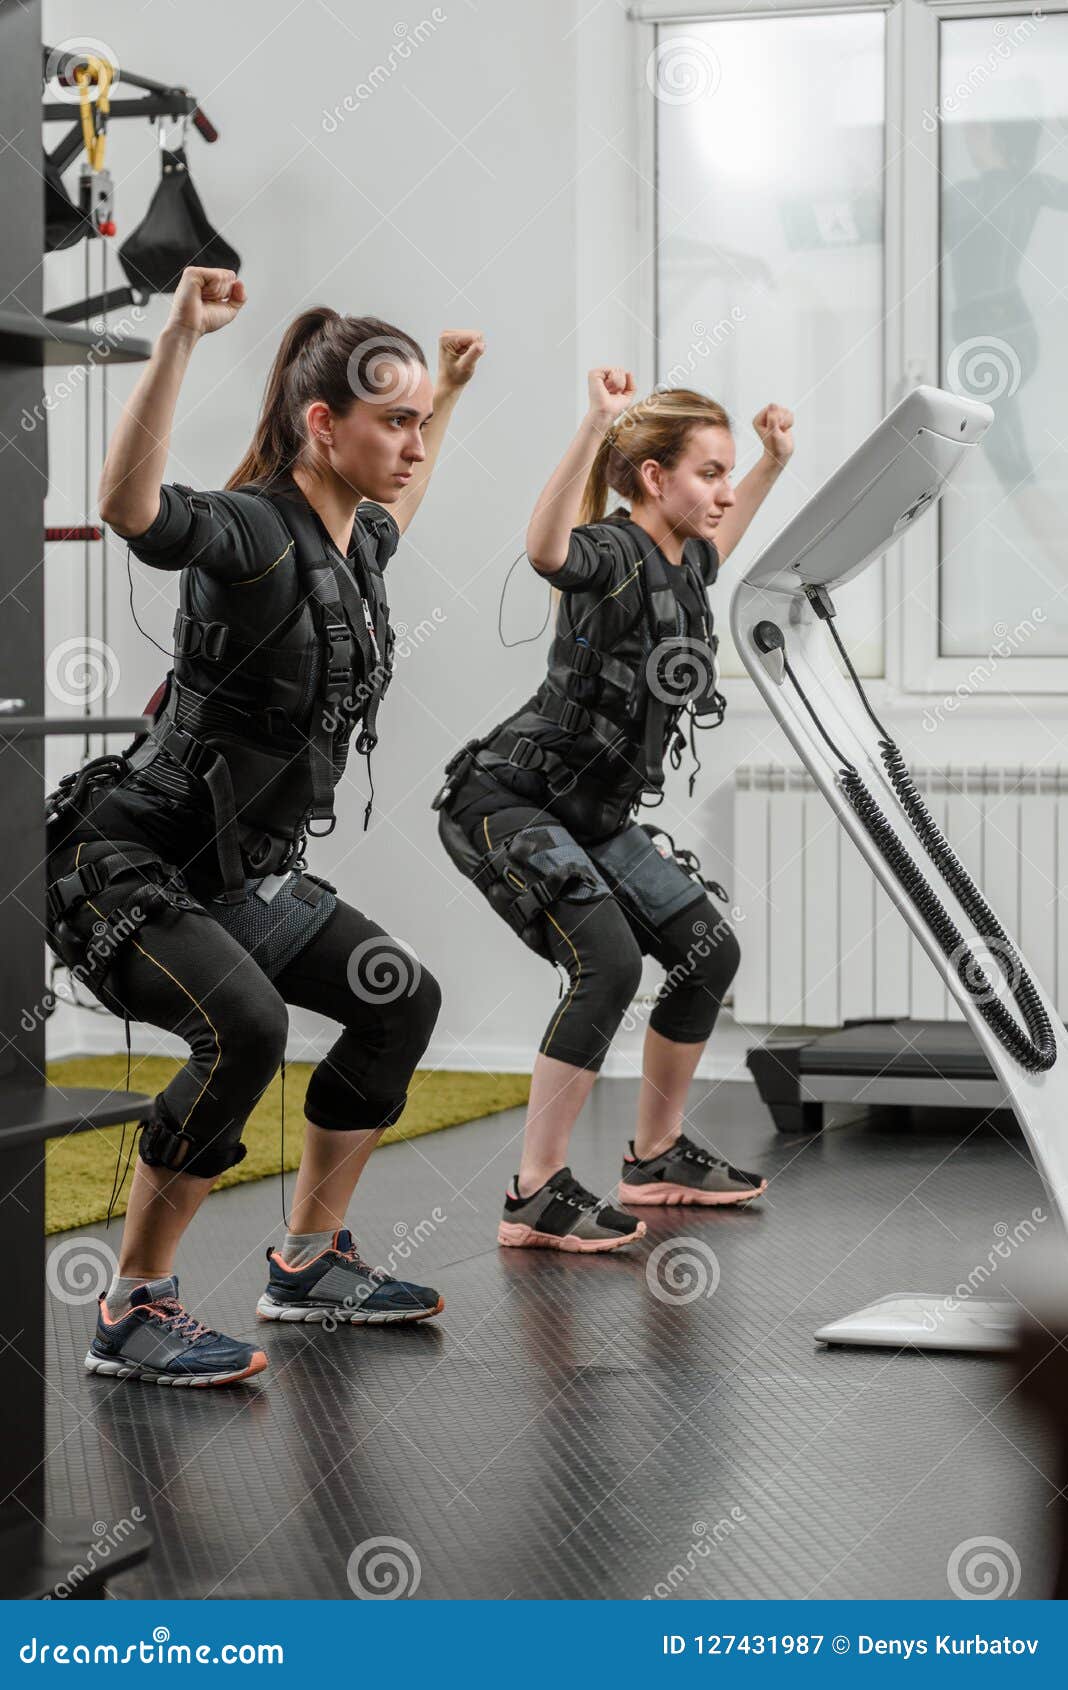 Overtollig Actief Onafhankelijkheid EMS Training in Fitnessclub Stock Image - Image of modern, cable: 127431987